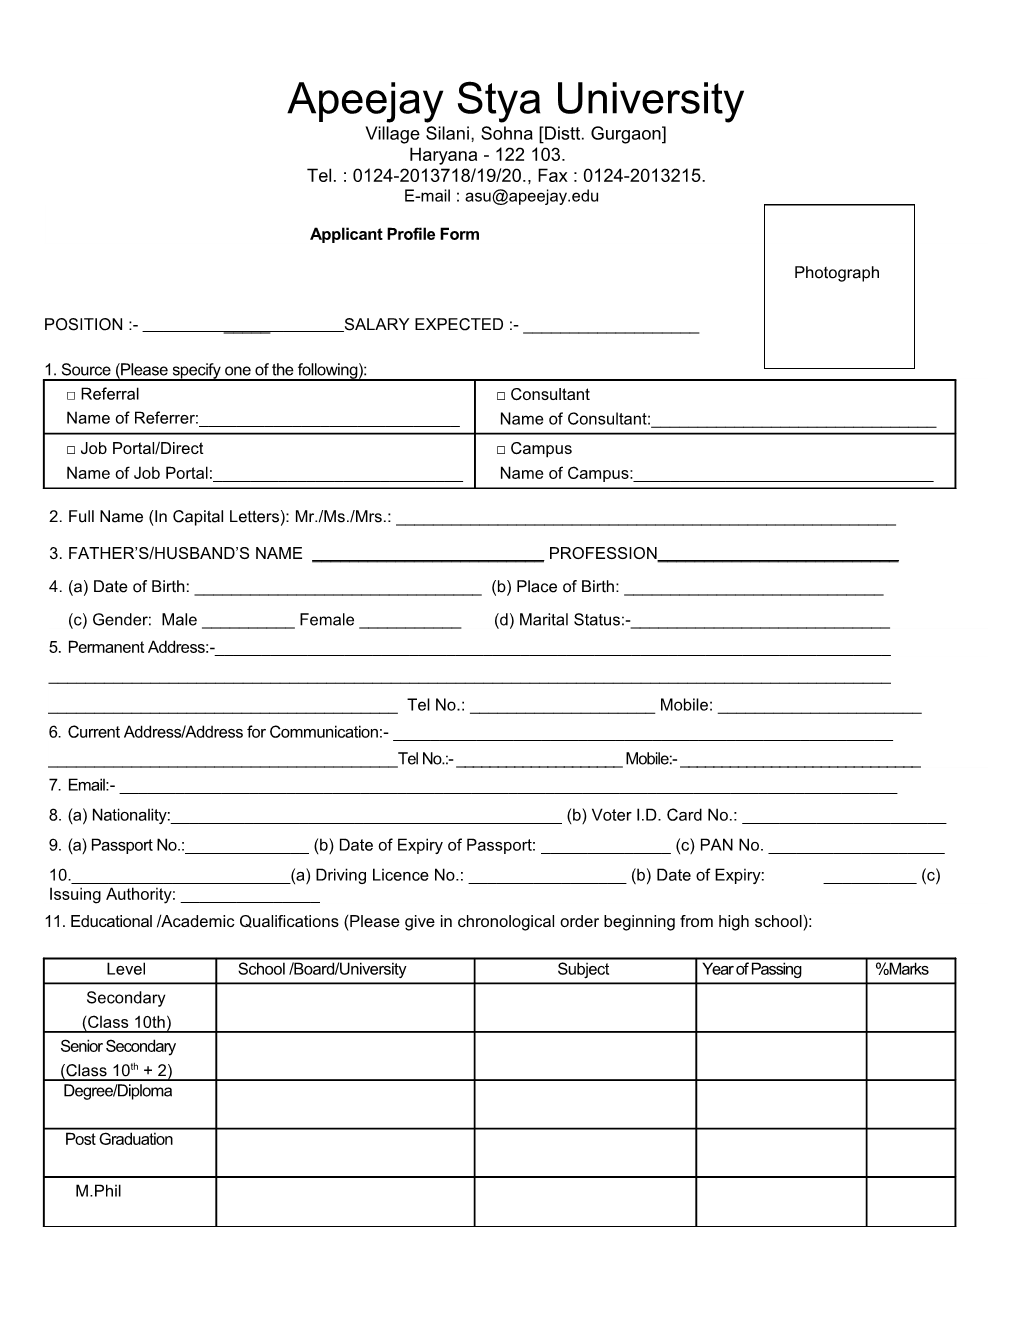 Applicant Profile Form